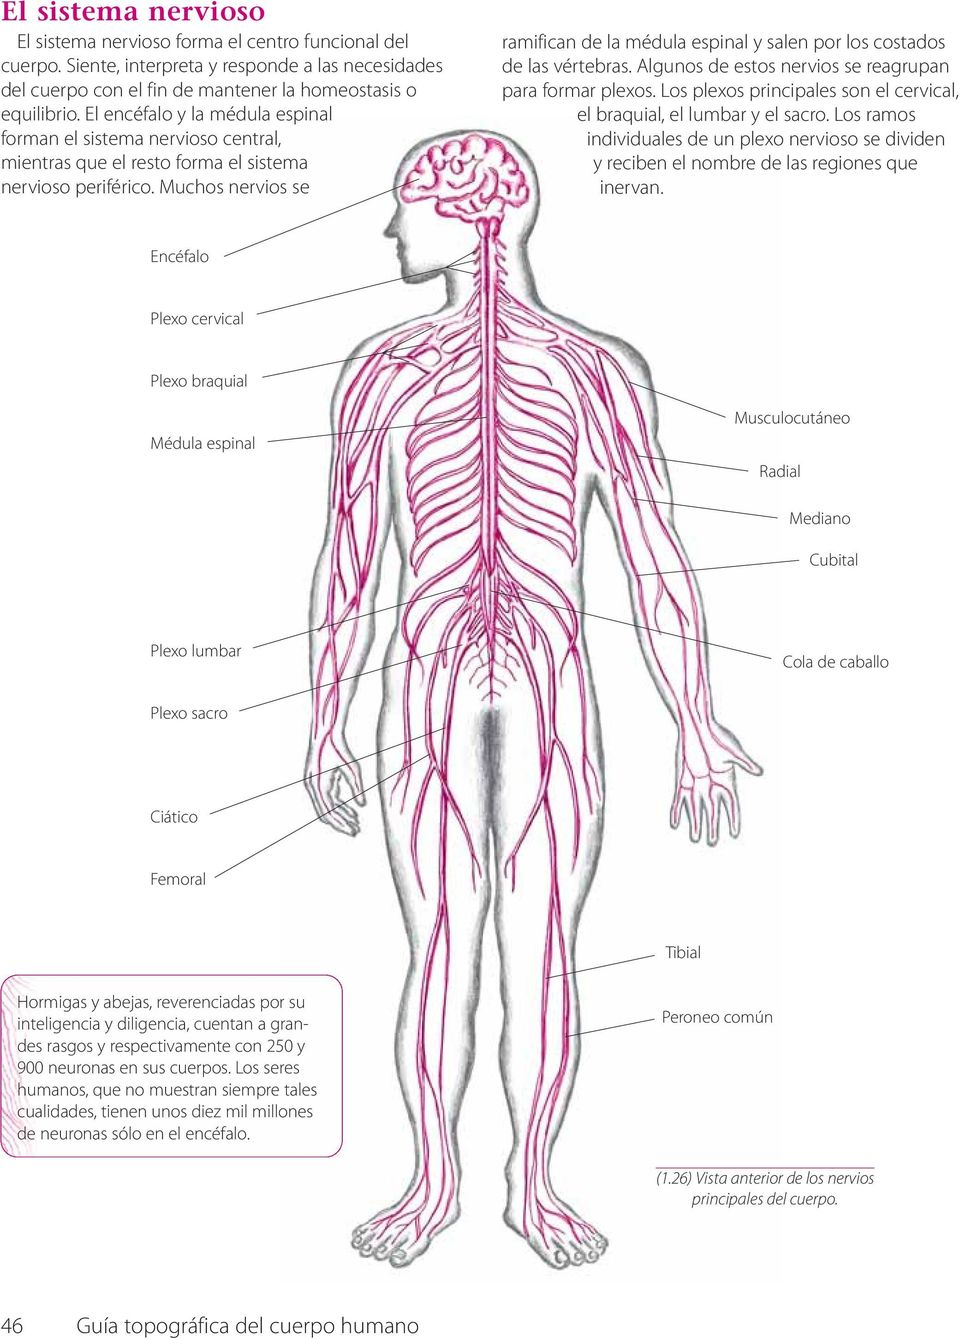 Muchos nervios se ramifican de la médula espinal y salen por los costados de las vértebras. Algunos de estos nervios se reagrupan para formar plexos.